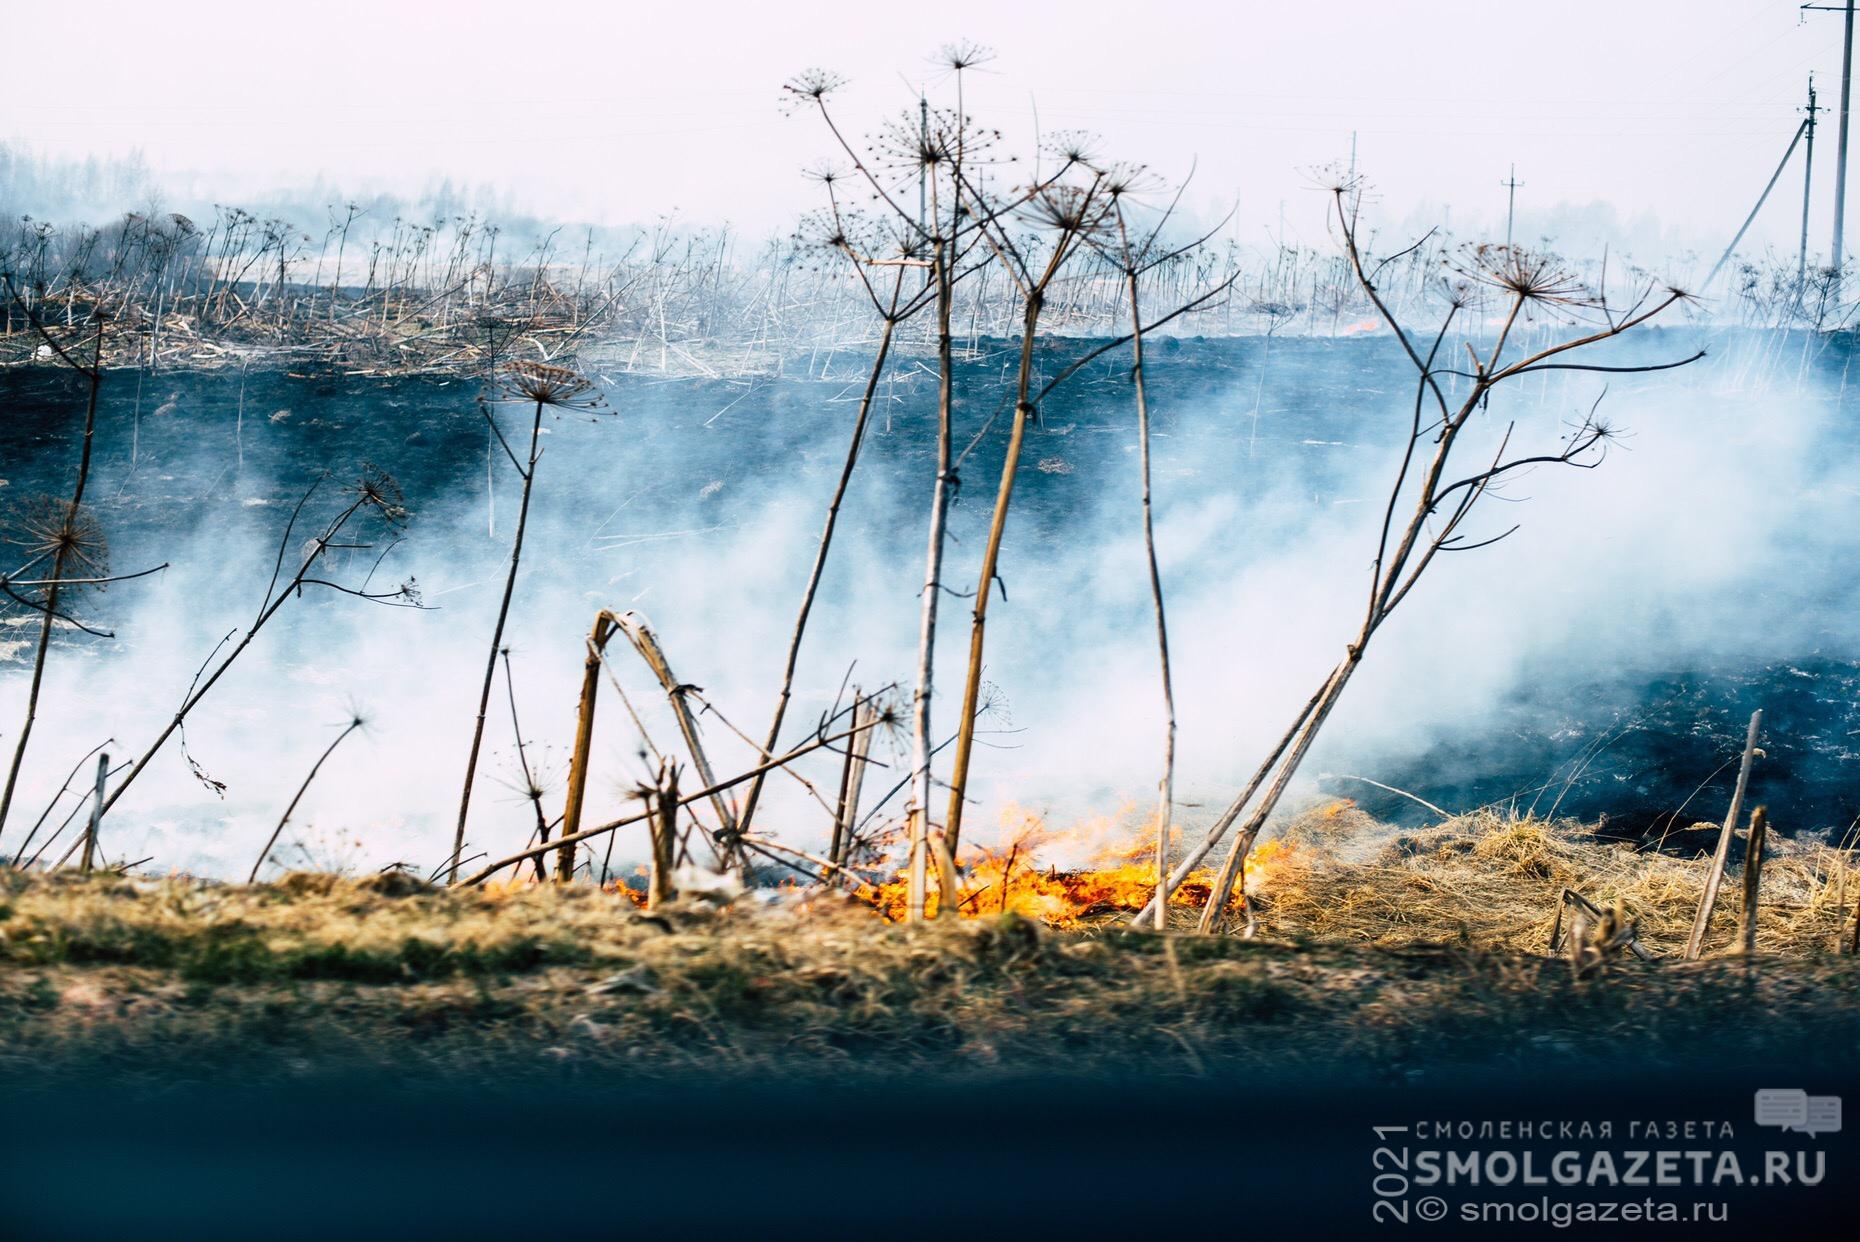 Предотвращение пожаров на Смоленщине — первоочередная задача